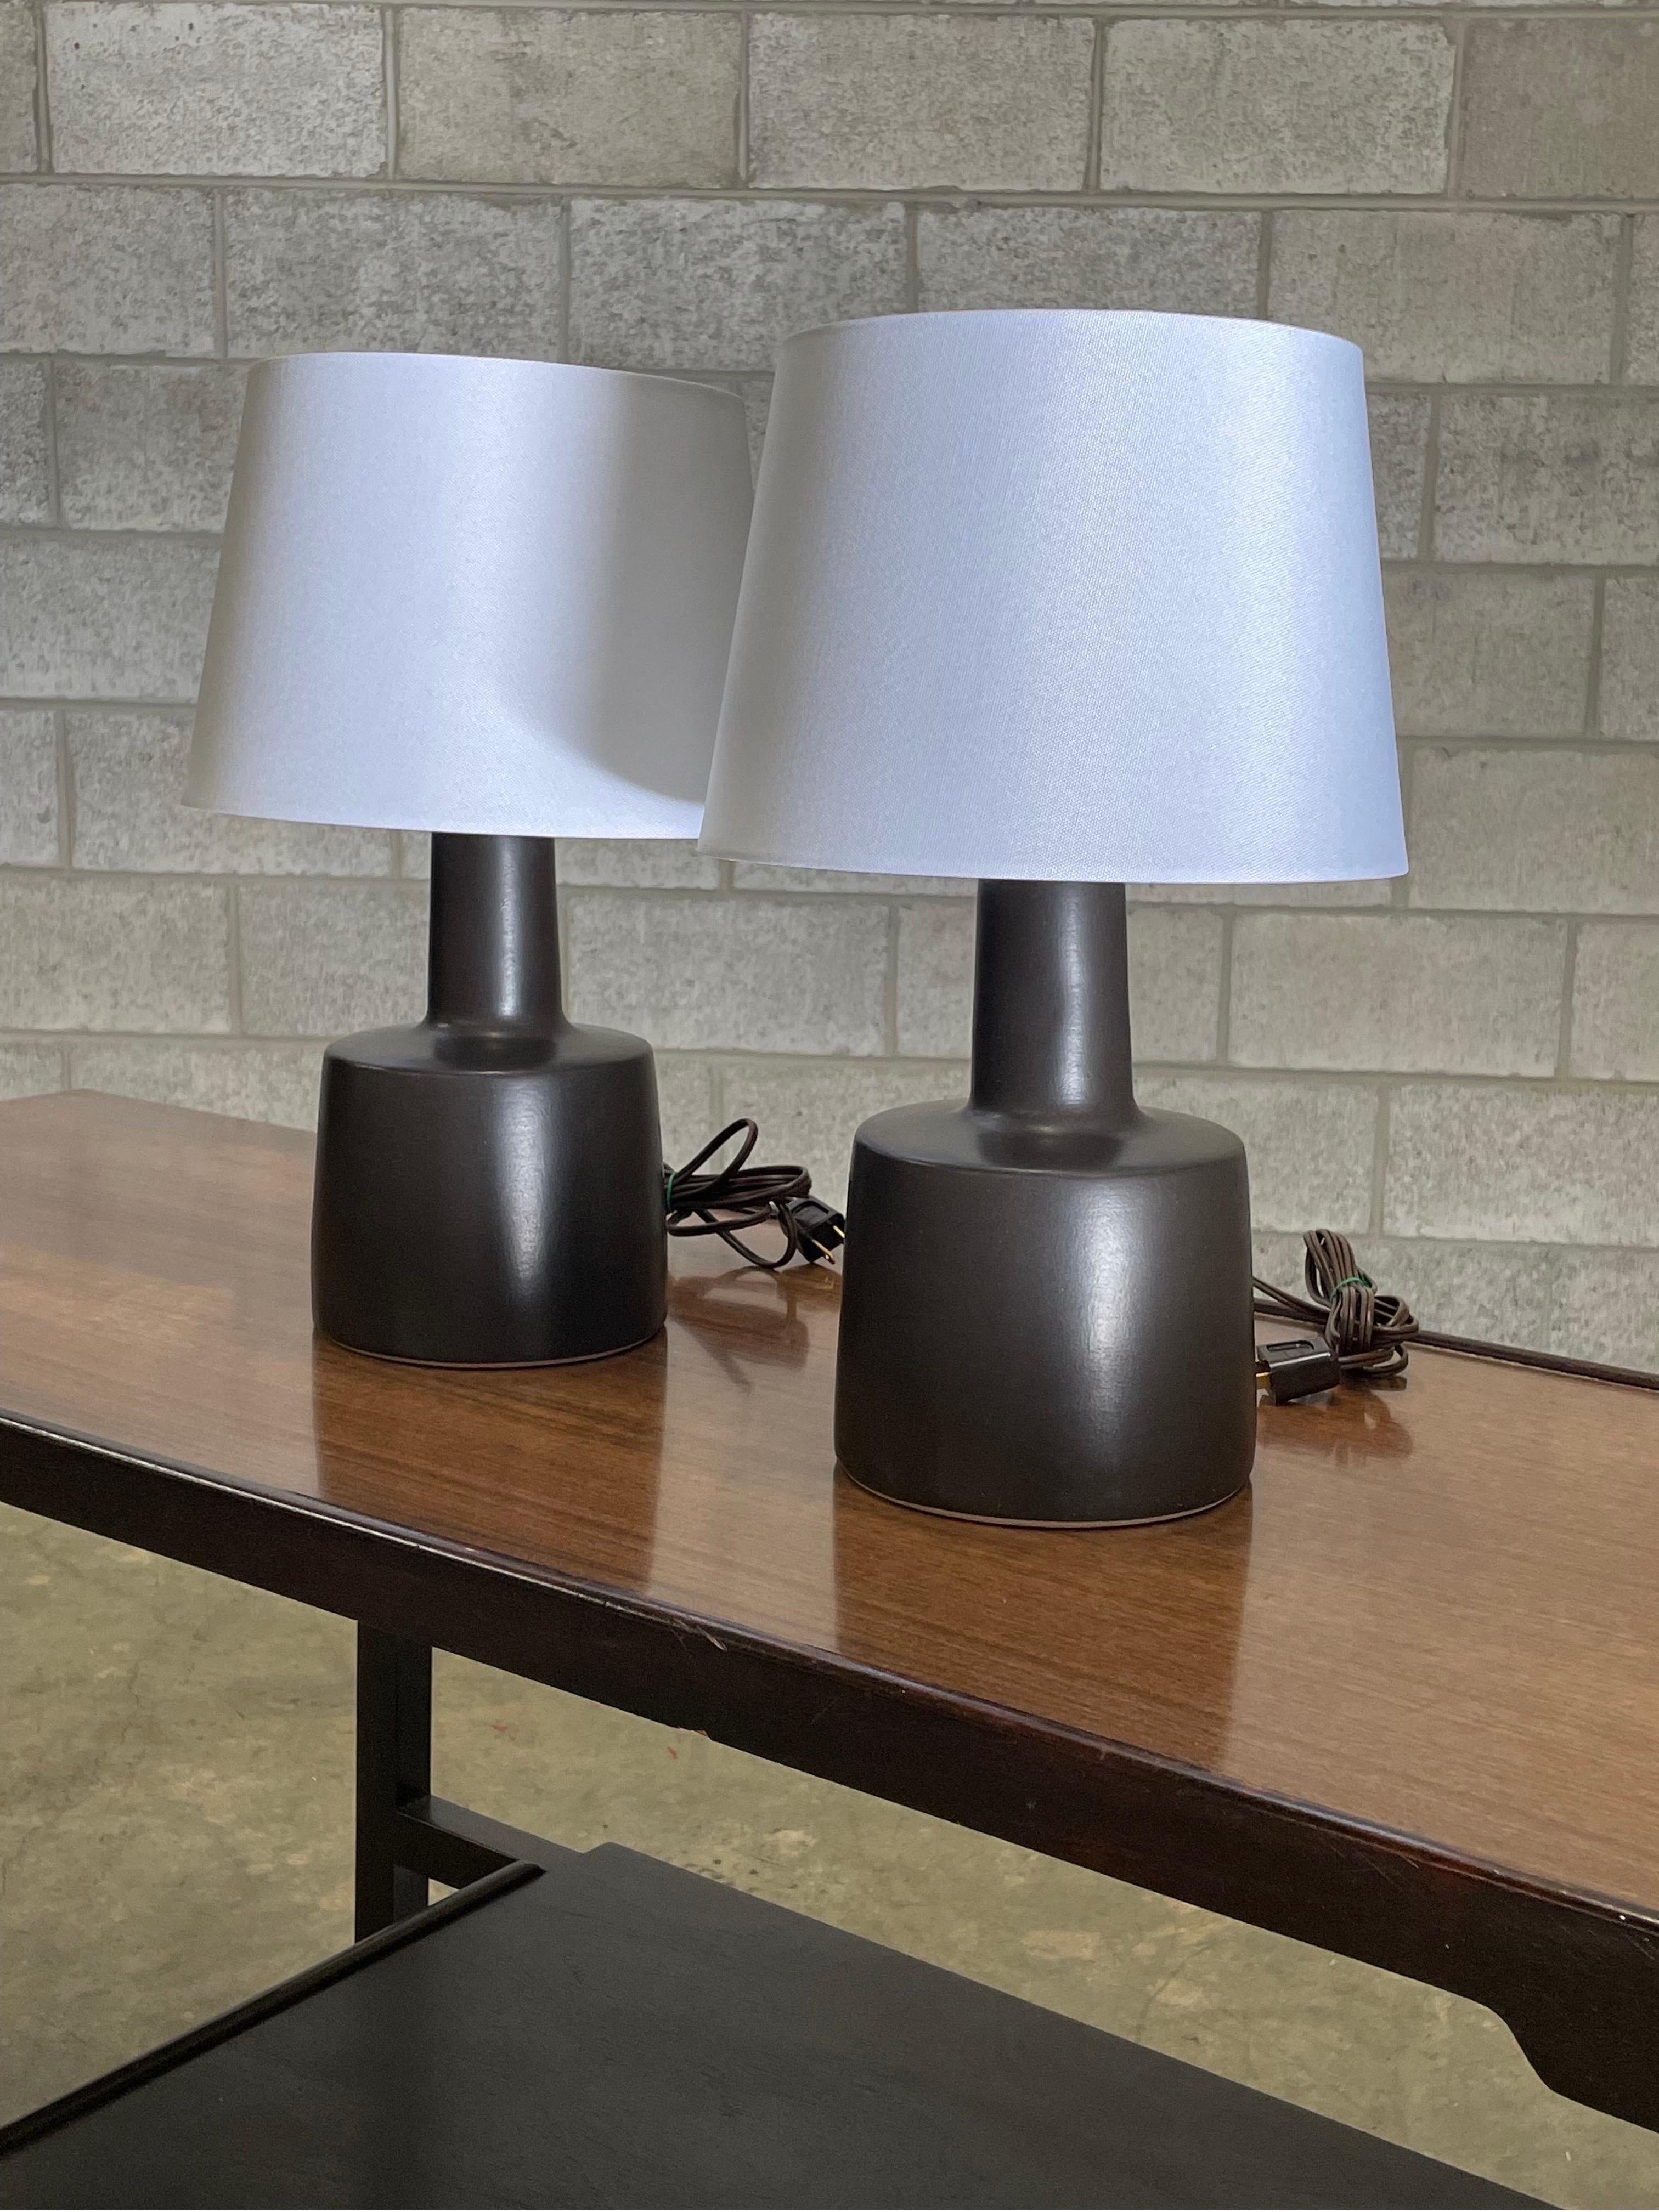 Lampes de table conçues par le duo de céramistes Jane et Gordon Martz pour Marshall Studios. La couleur est mate ou noir mat. 

Dimensions totales : 16